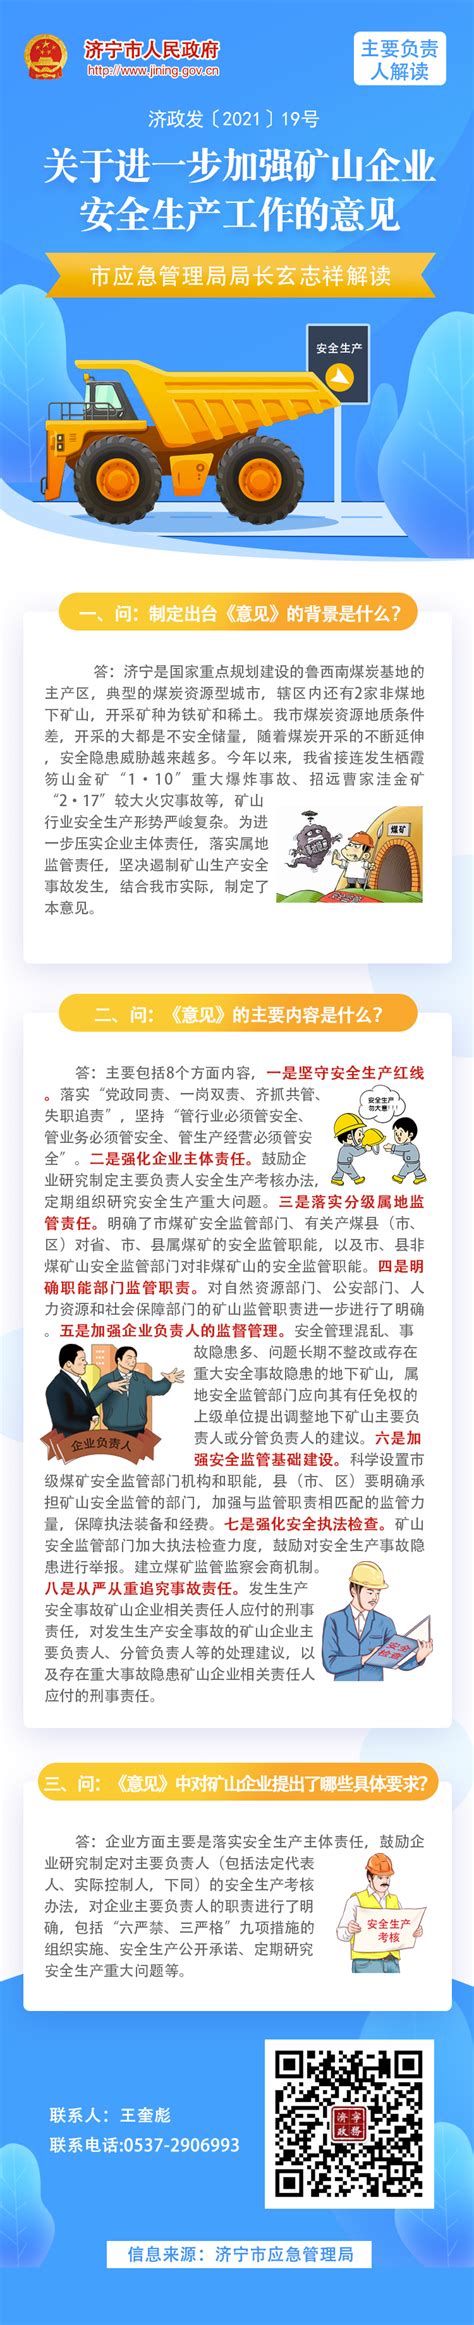 南昌市建筑工地安全生产工作简报（6月21日—6月27日） - 南昌市人民政府